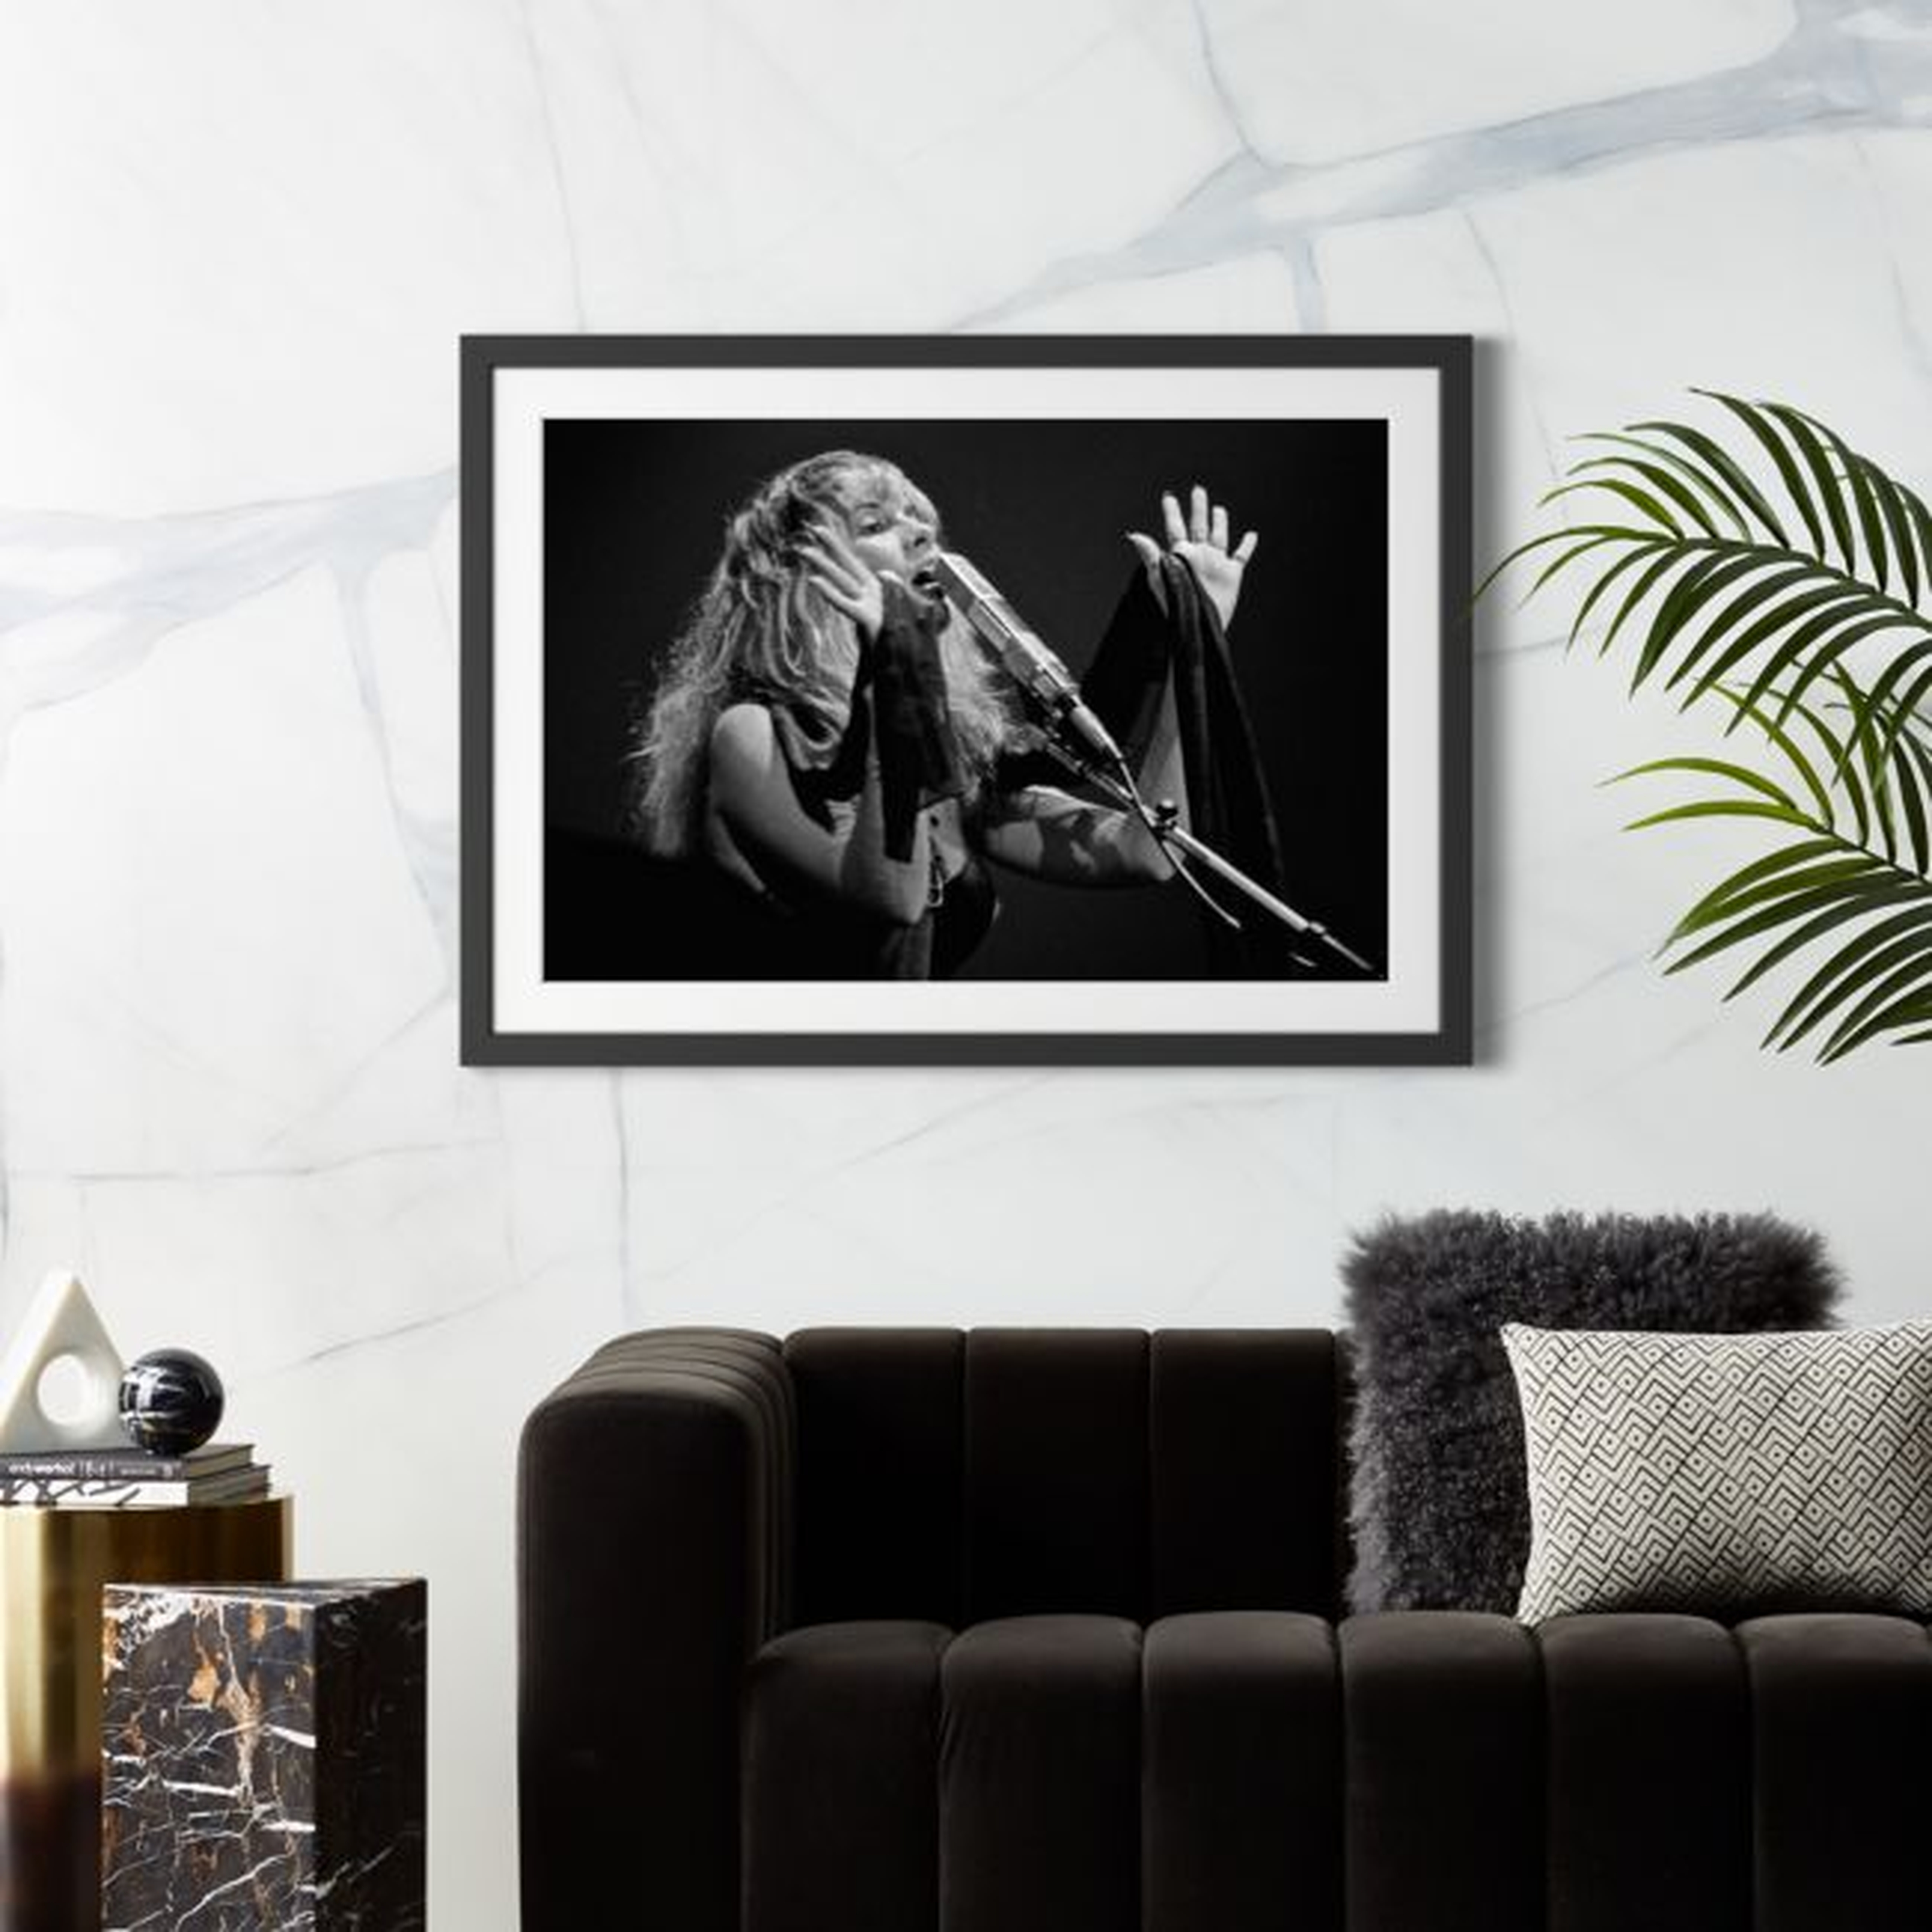 Stevie Nicks 1977 with Black Frame 39.5"x33" - CB2